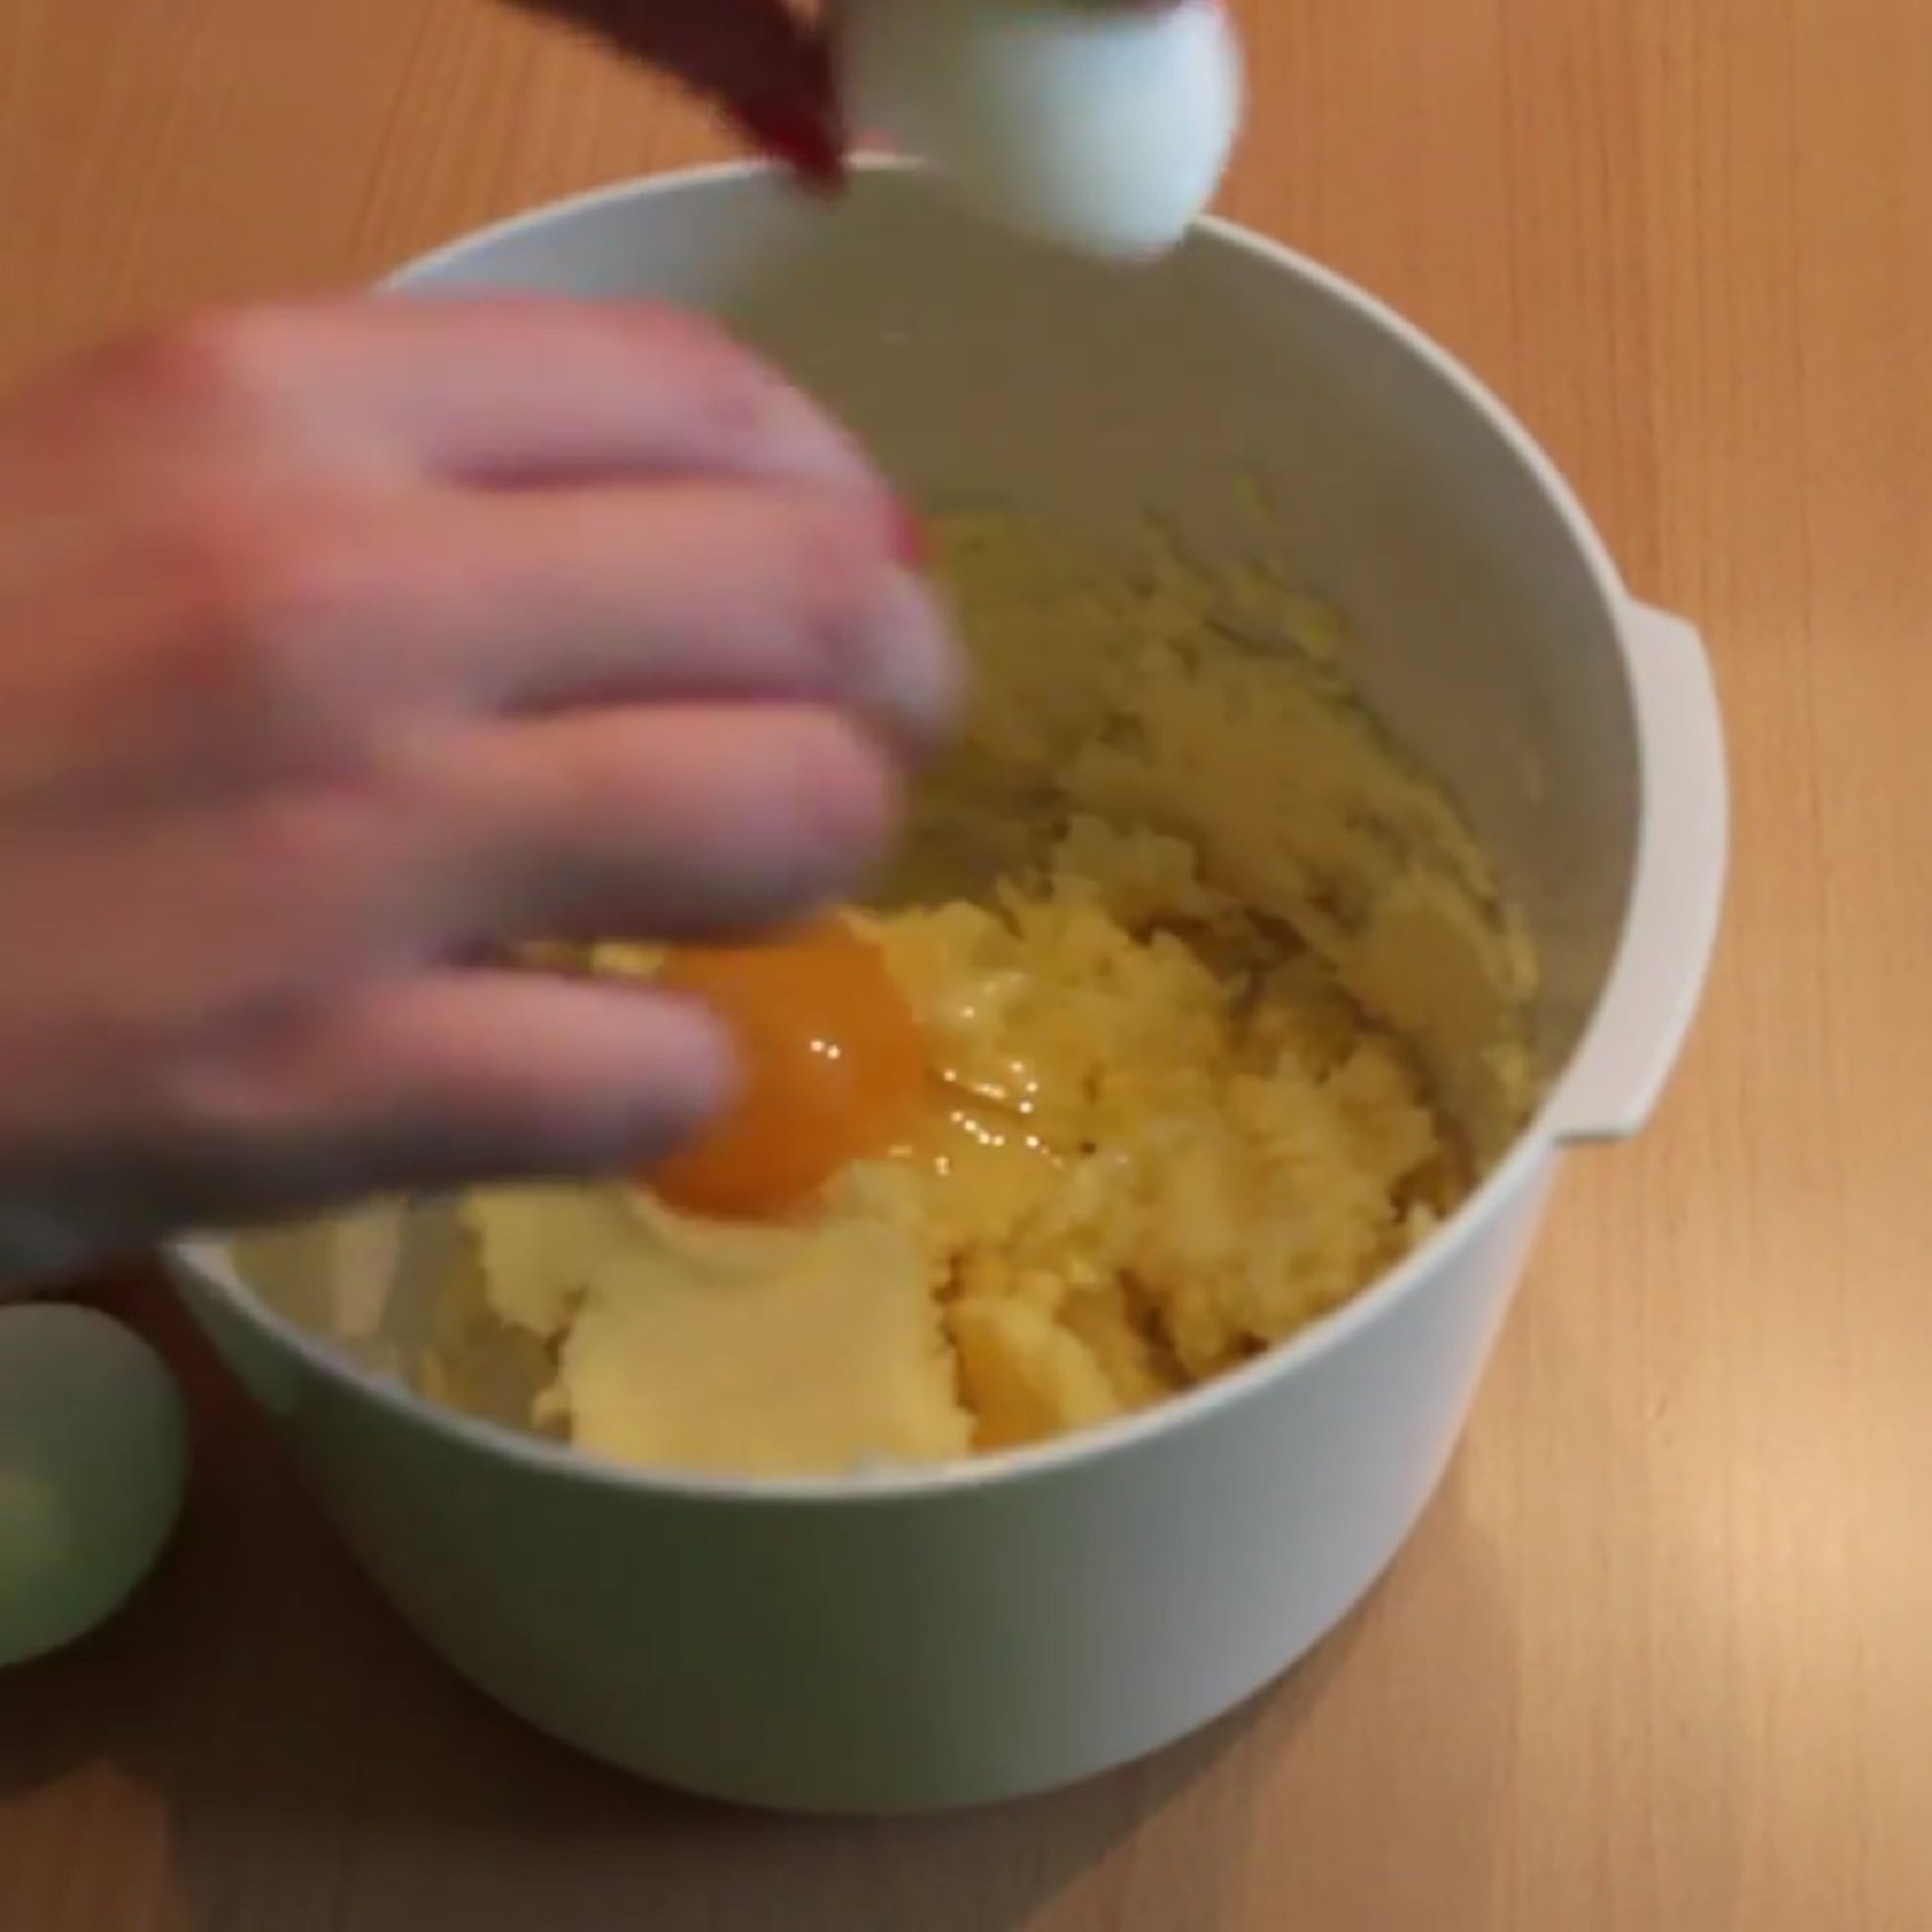 Den Backofen auf 170°C vorheizen. Die Butter und den Zucker zusammen schaumig rühren. Nach und nach die Eier unterrühren.